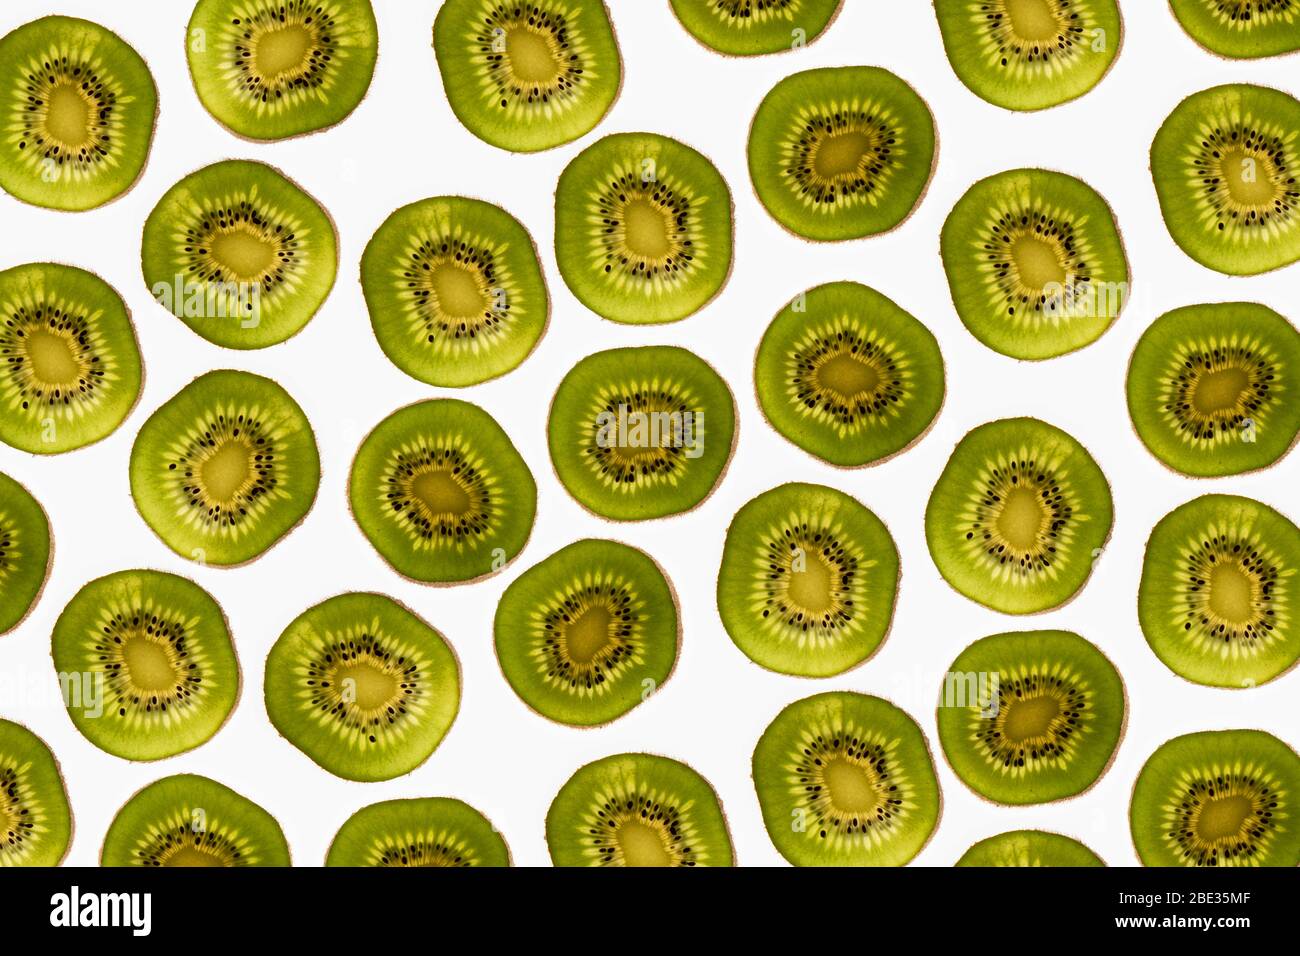 una hermosa imagen de un interesante patrón de rodajas de kiwi sobre un fondo blanco brillante, flaplay Foto de stock